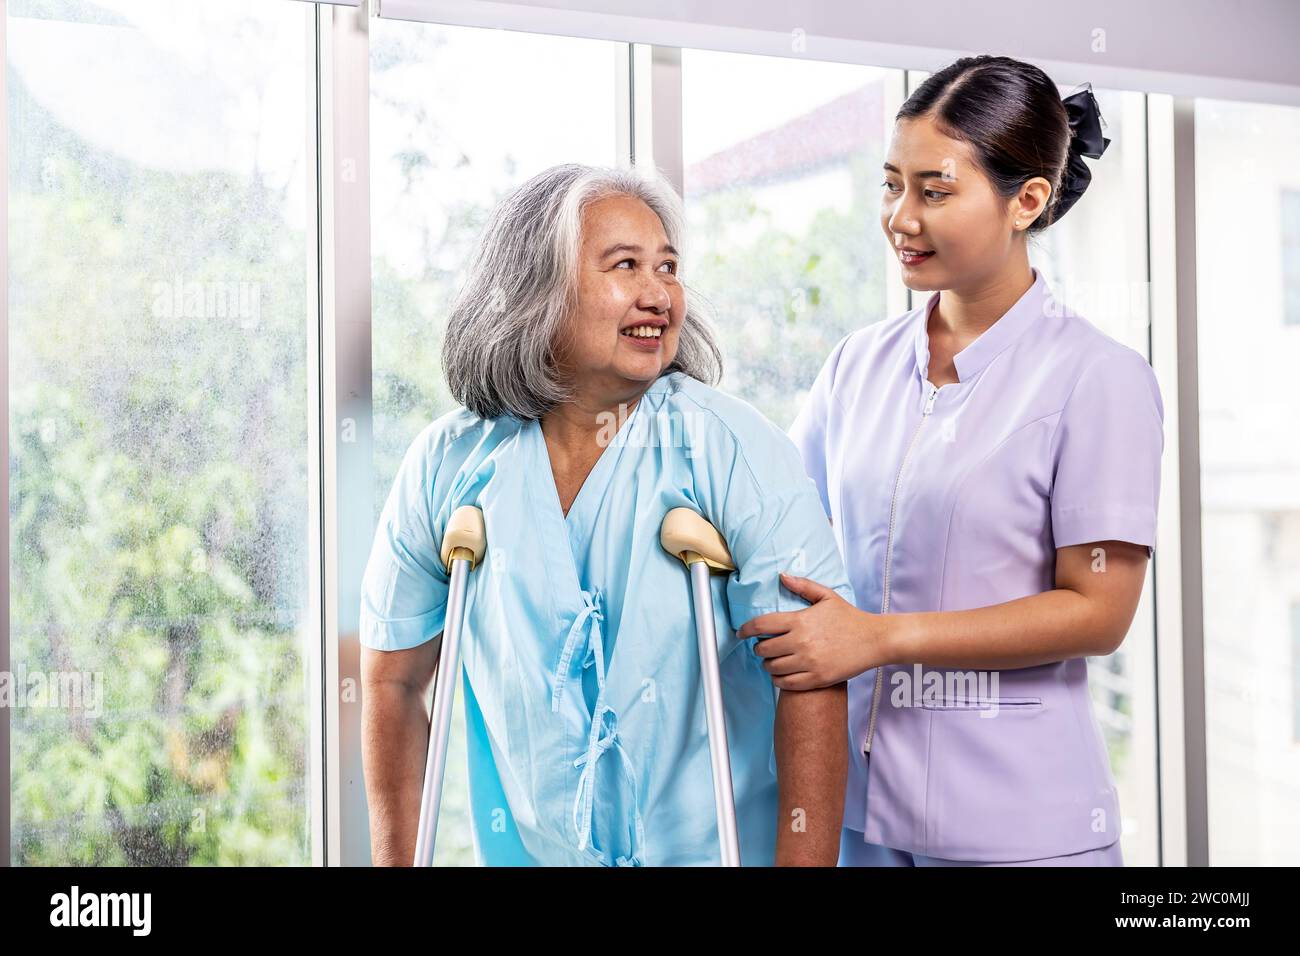 Eine aufmerksame Krankenschwester unterhält sich mit einer älteren Frau, indem sie Krücken zur Unterstützung verwendet Stockfoto